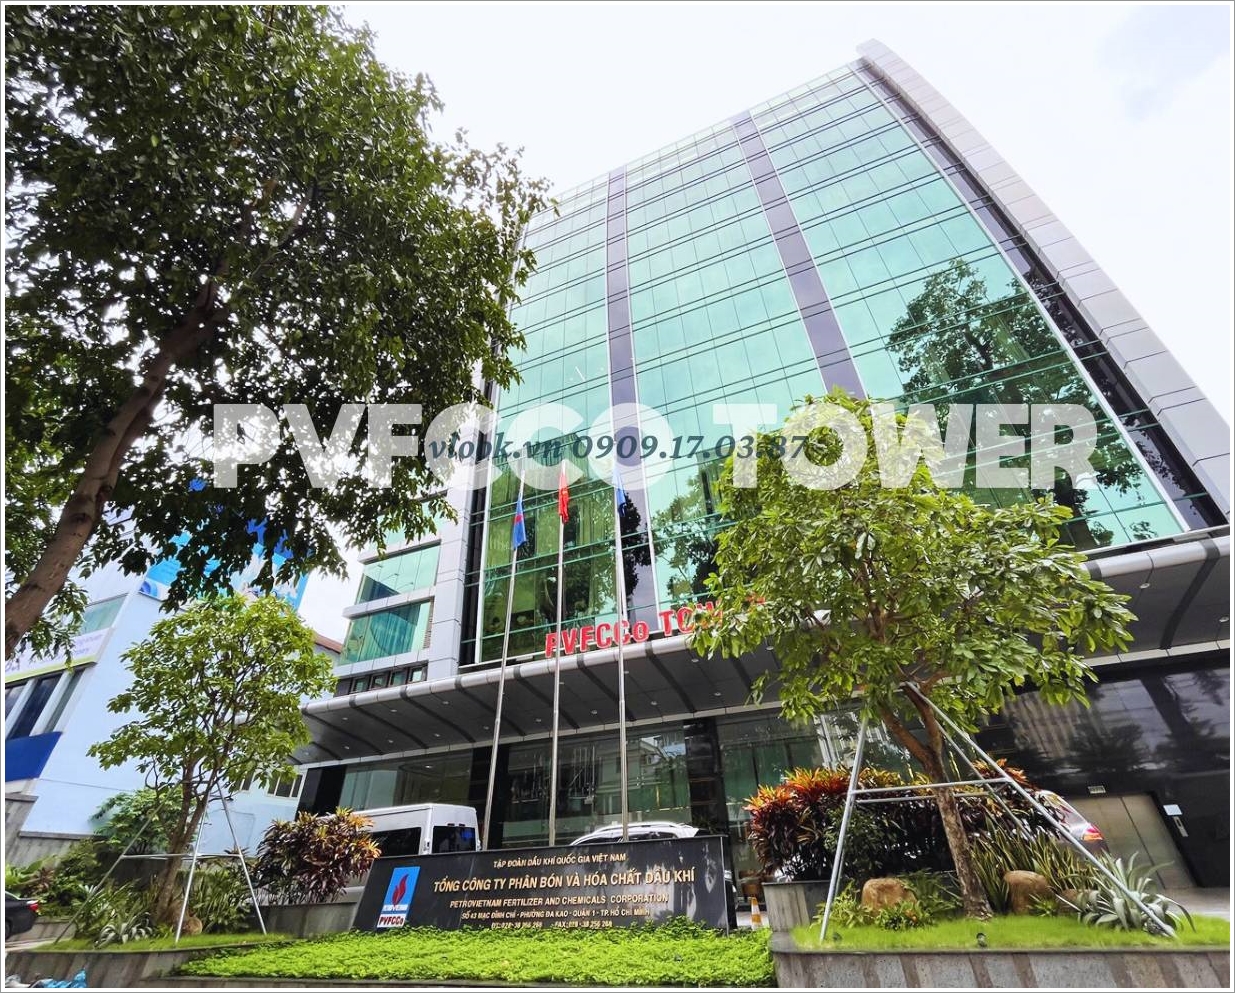 Cao ốc cho thuê văn phòng PVFCCo Tower, Mạc Đĩnh Chi, Quận 1 - Văn phòng cho thuê TP.HCM - vlook.vn